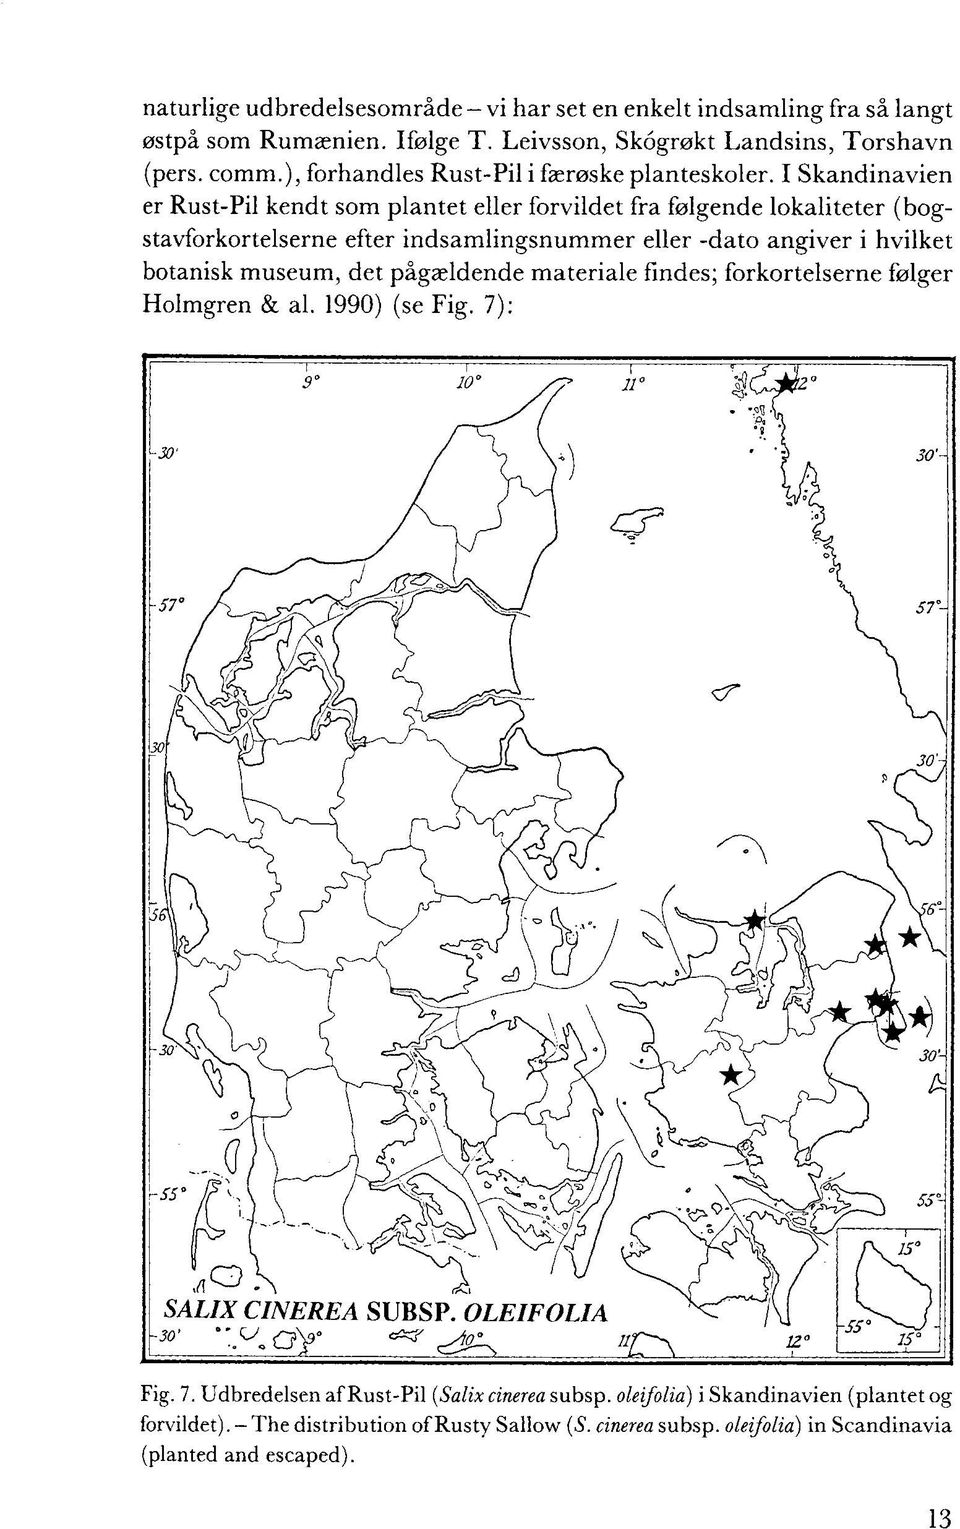 I Skandinavien er Rust-Pil kendt som plantet eller forvildet fra følgende lokaliteter (bogstavforkortelserne efter indsamlingsnummer eller -dato angiver i hvilket